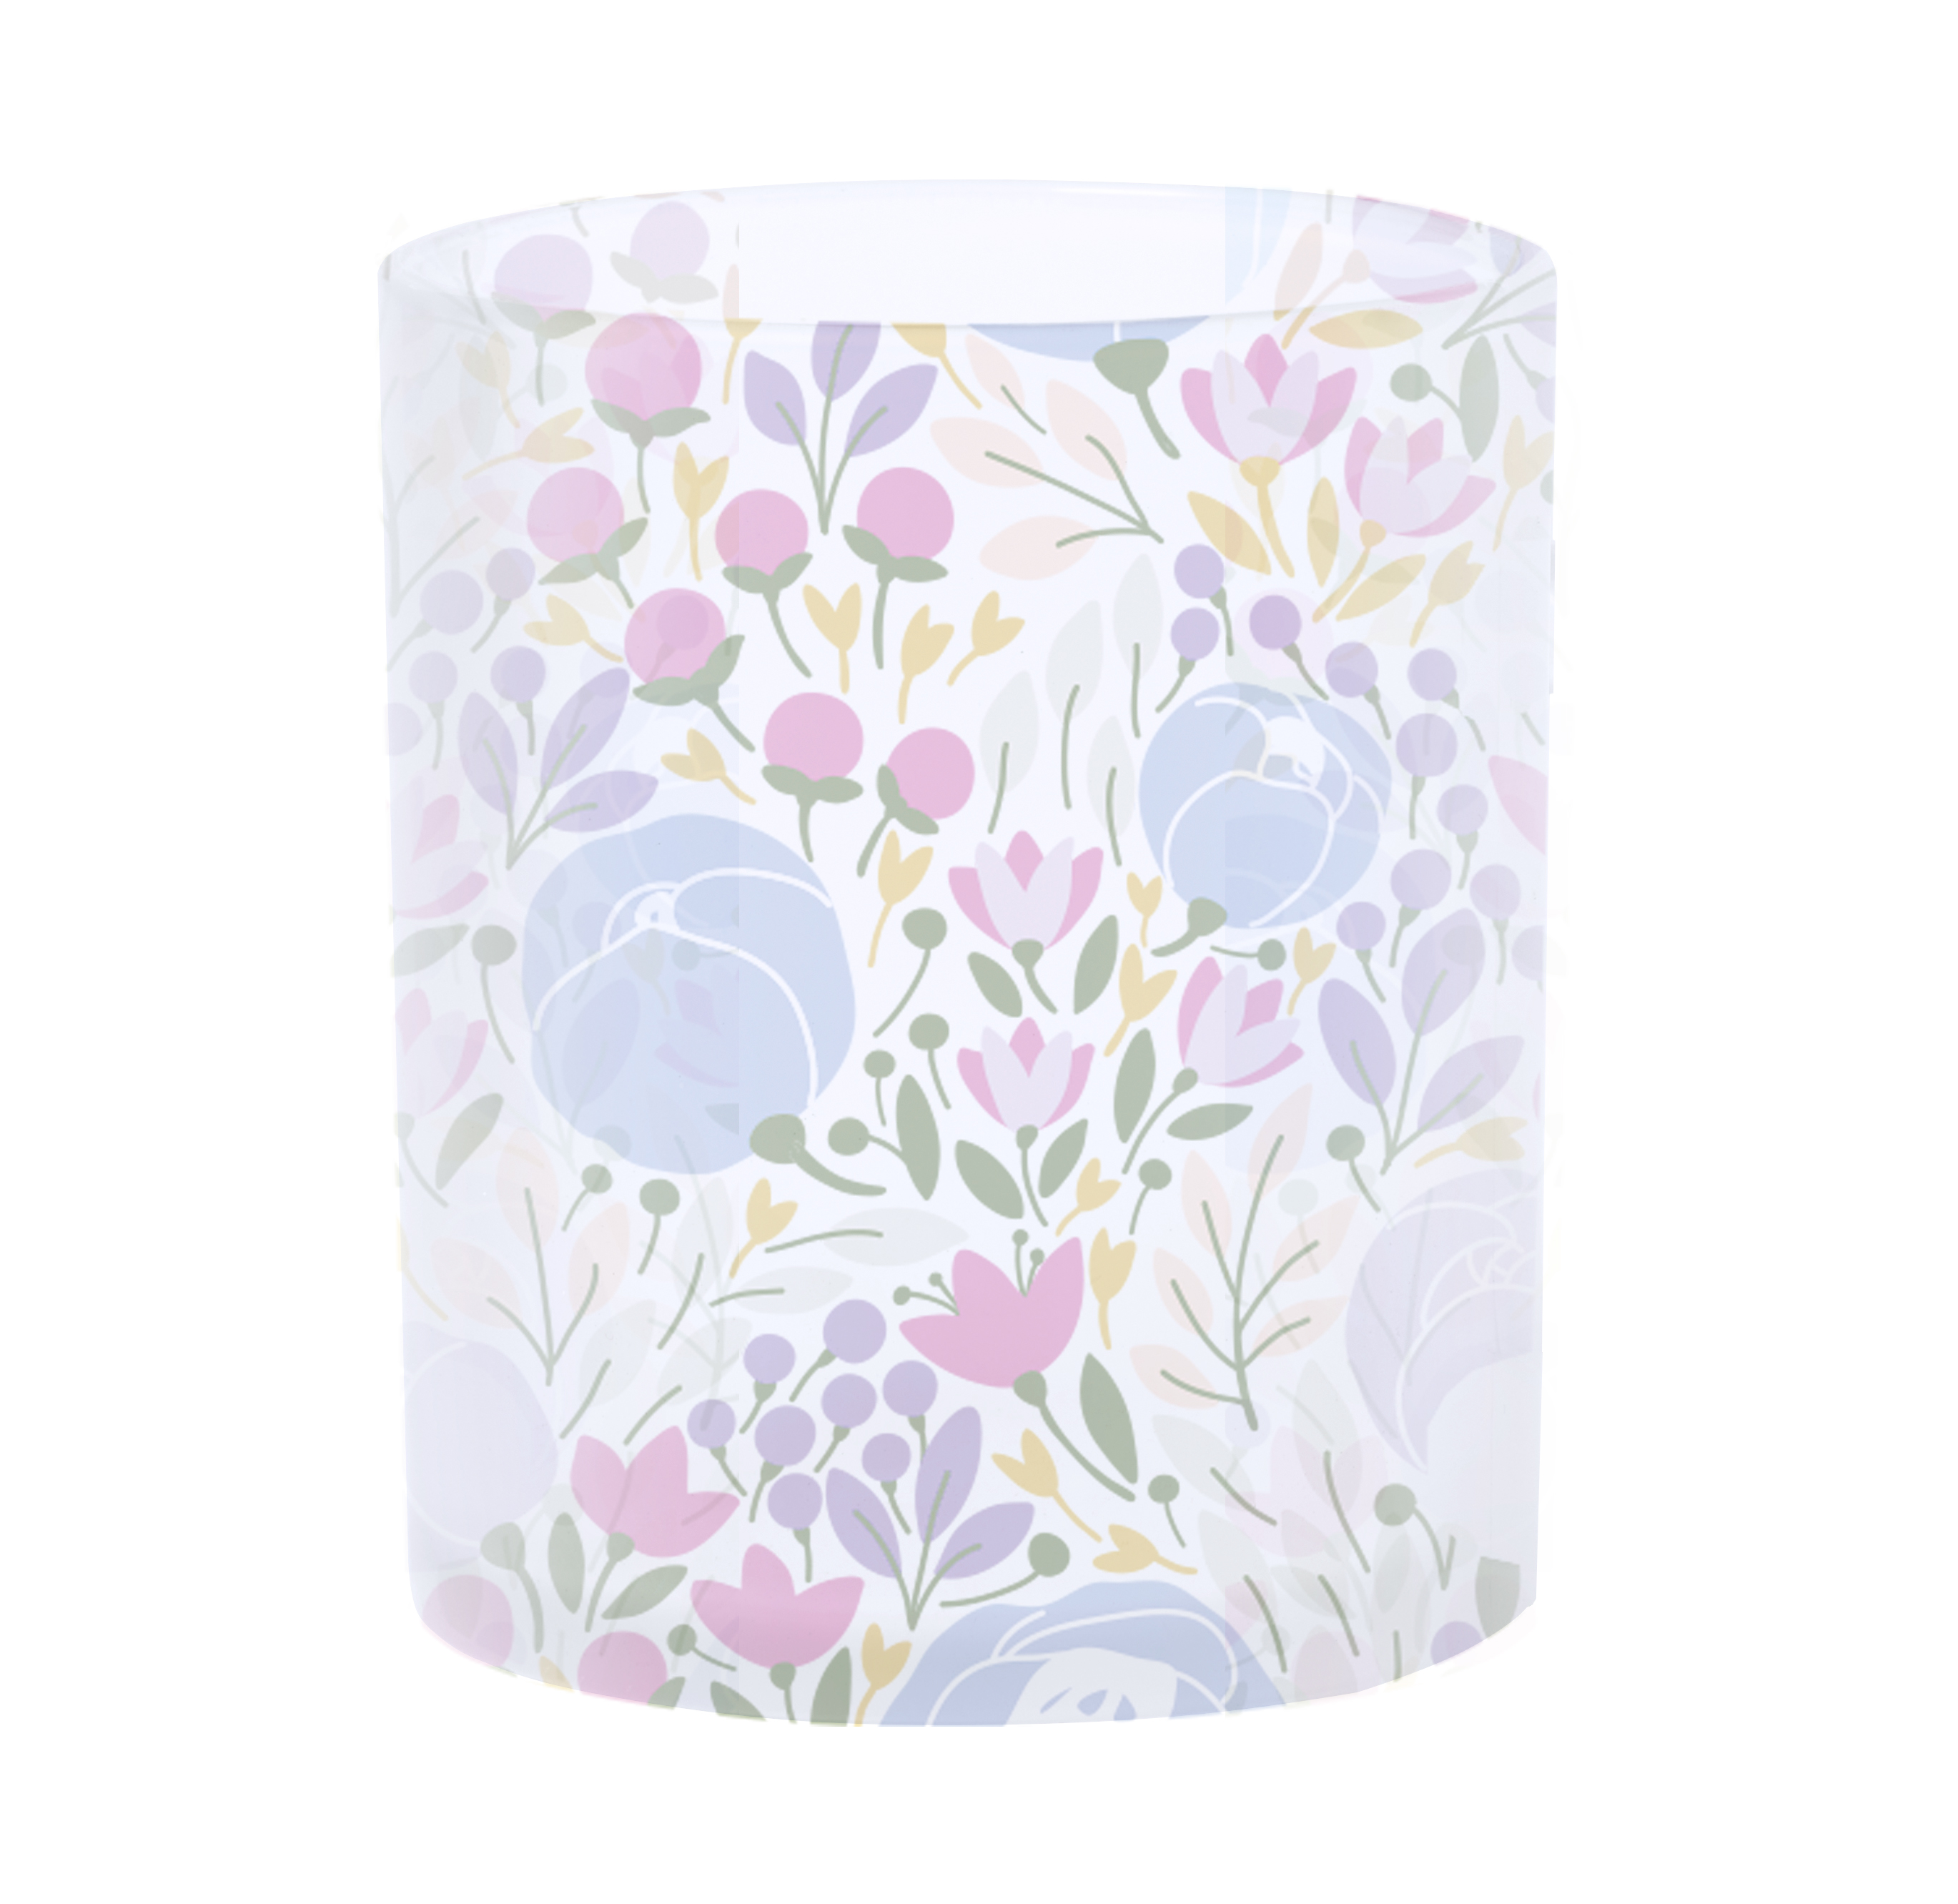 Amira mug for sublimation - white